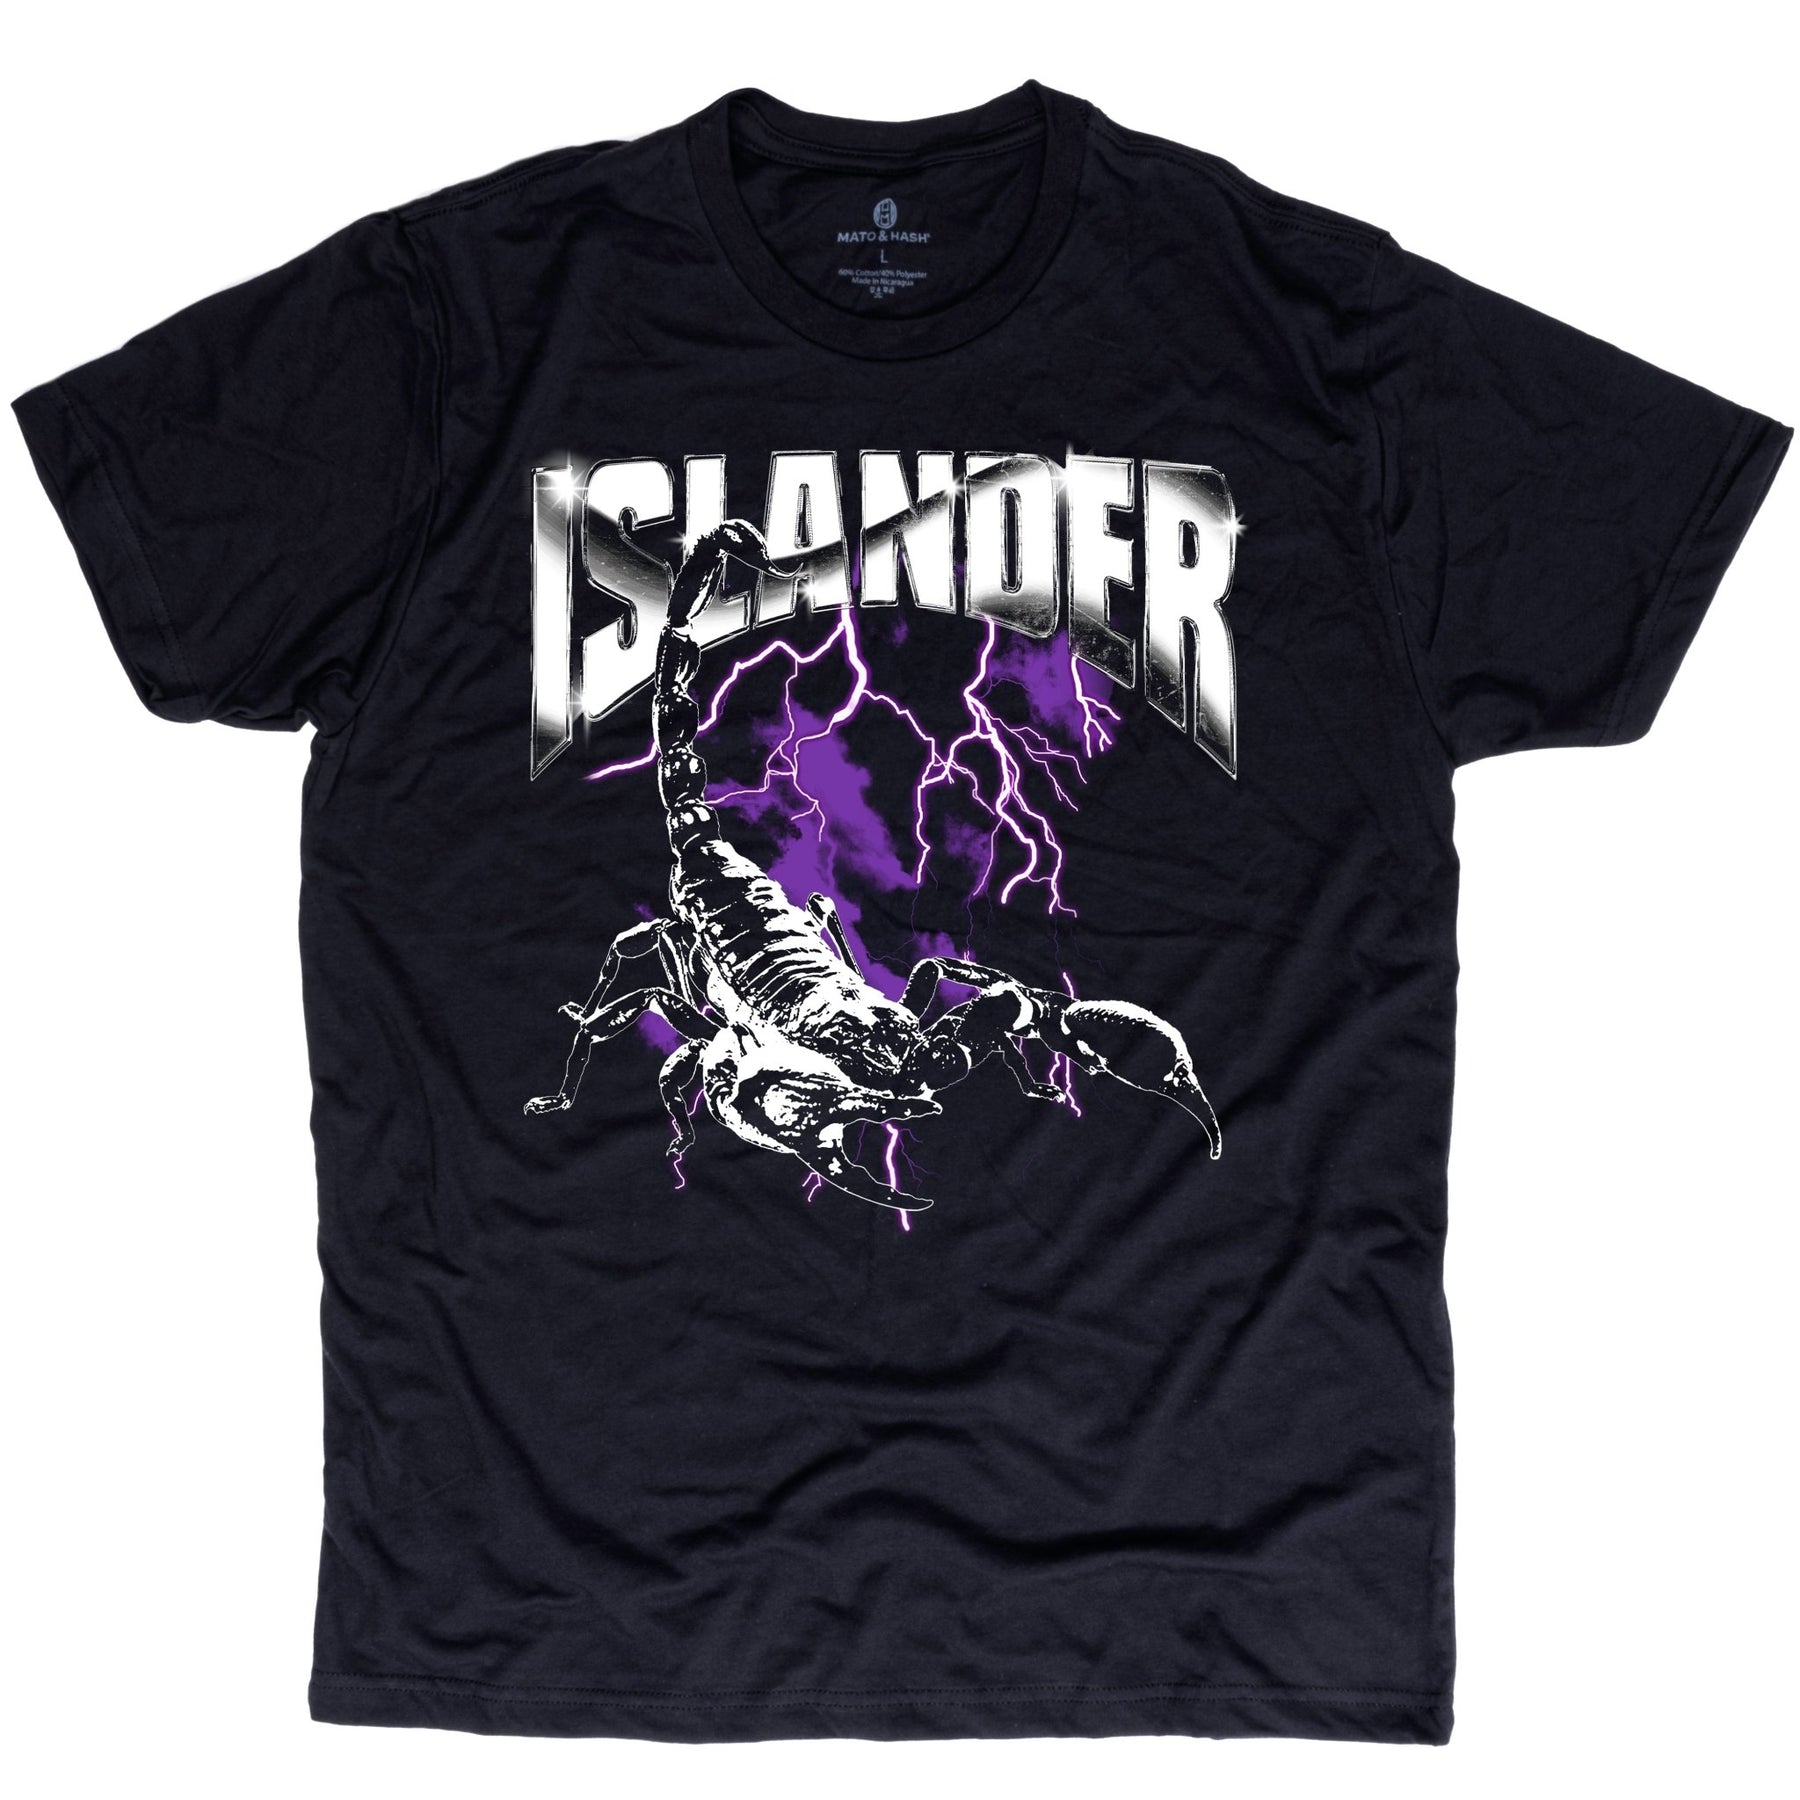 Islander Scorpion Shirt - Mato & Hash